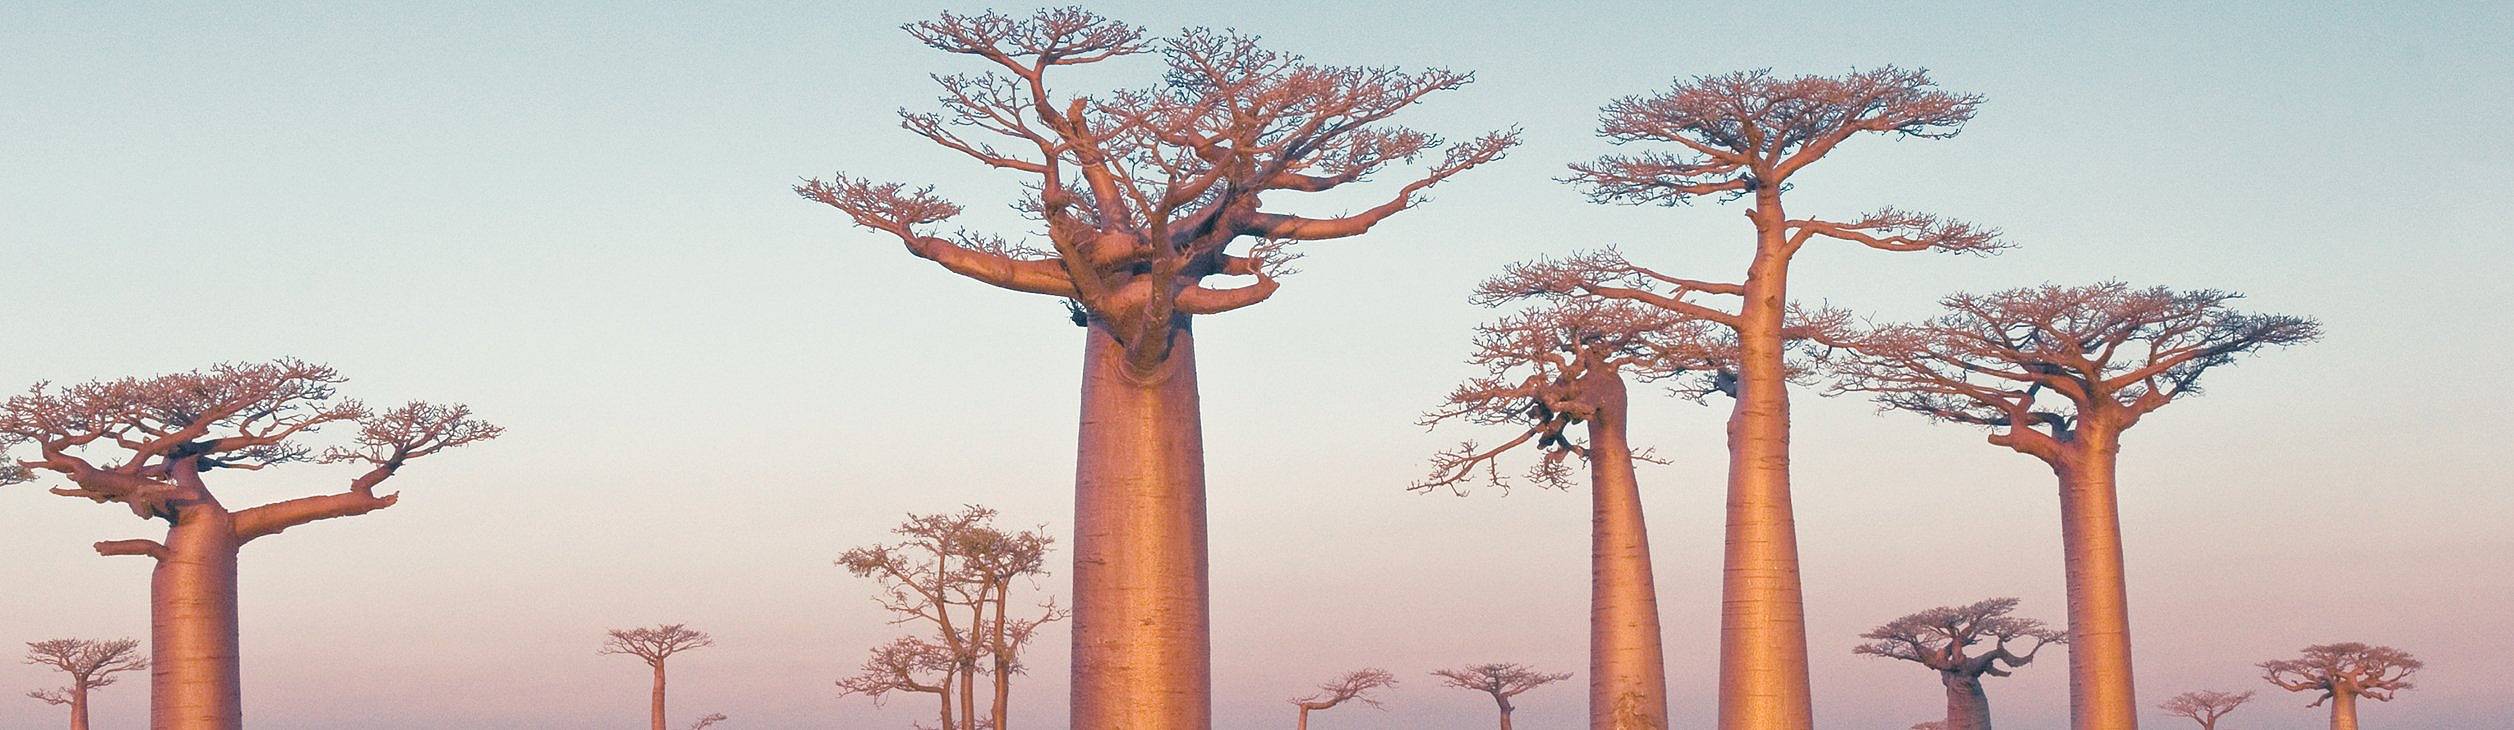 Invierno en Madagascar - Viajes en invierno 100% a medida